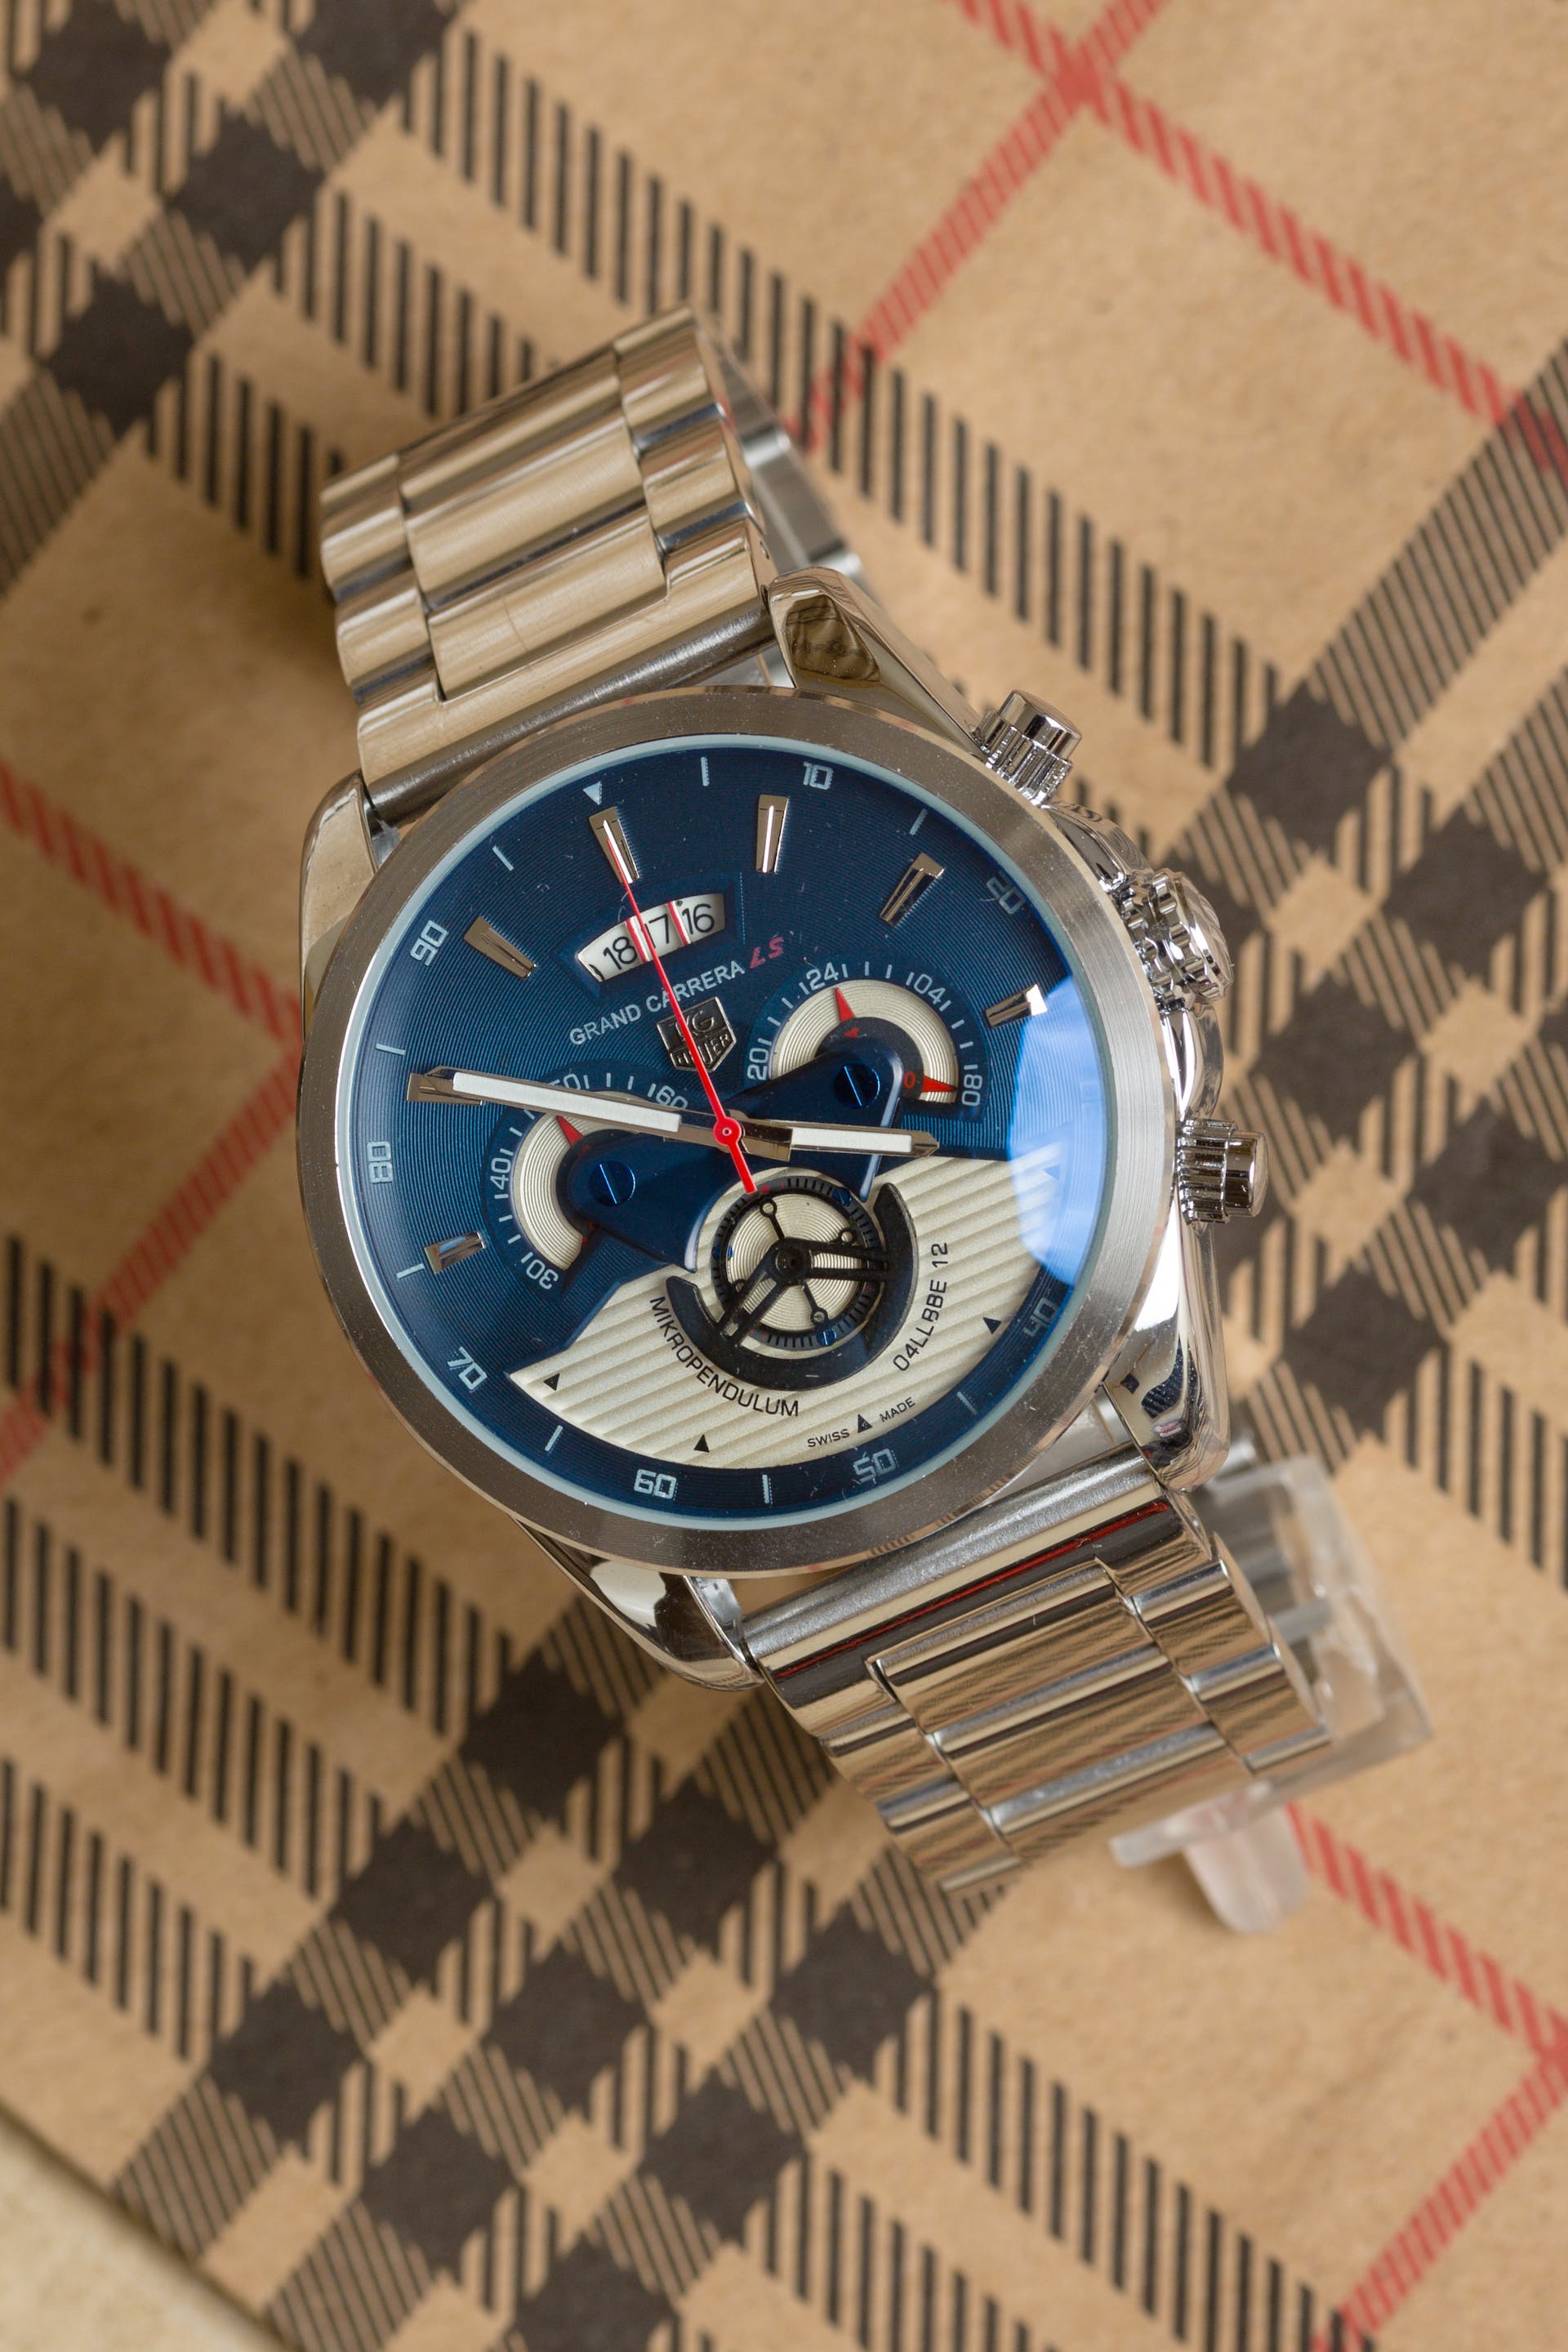 Un reloj de pulsera | Fuente: Pexels